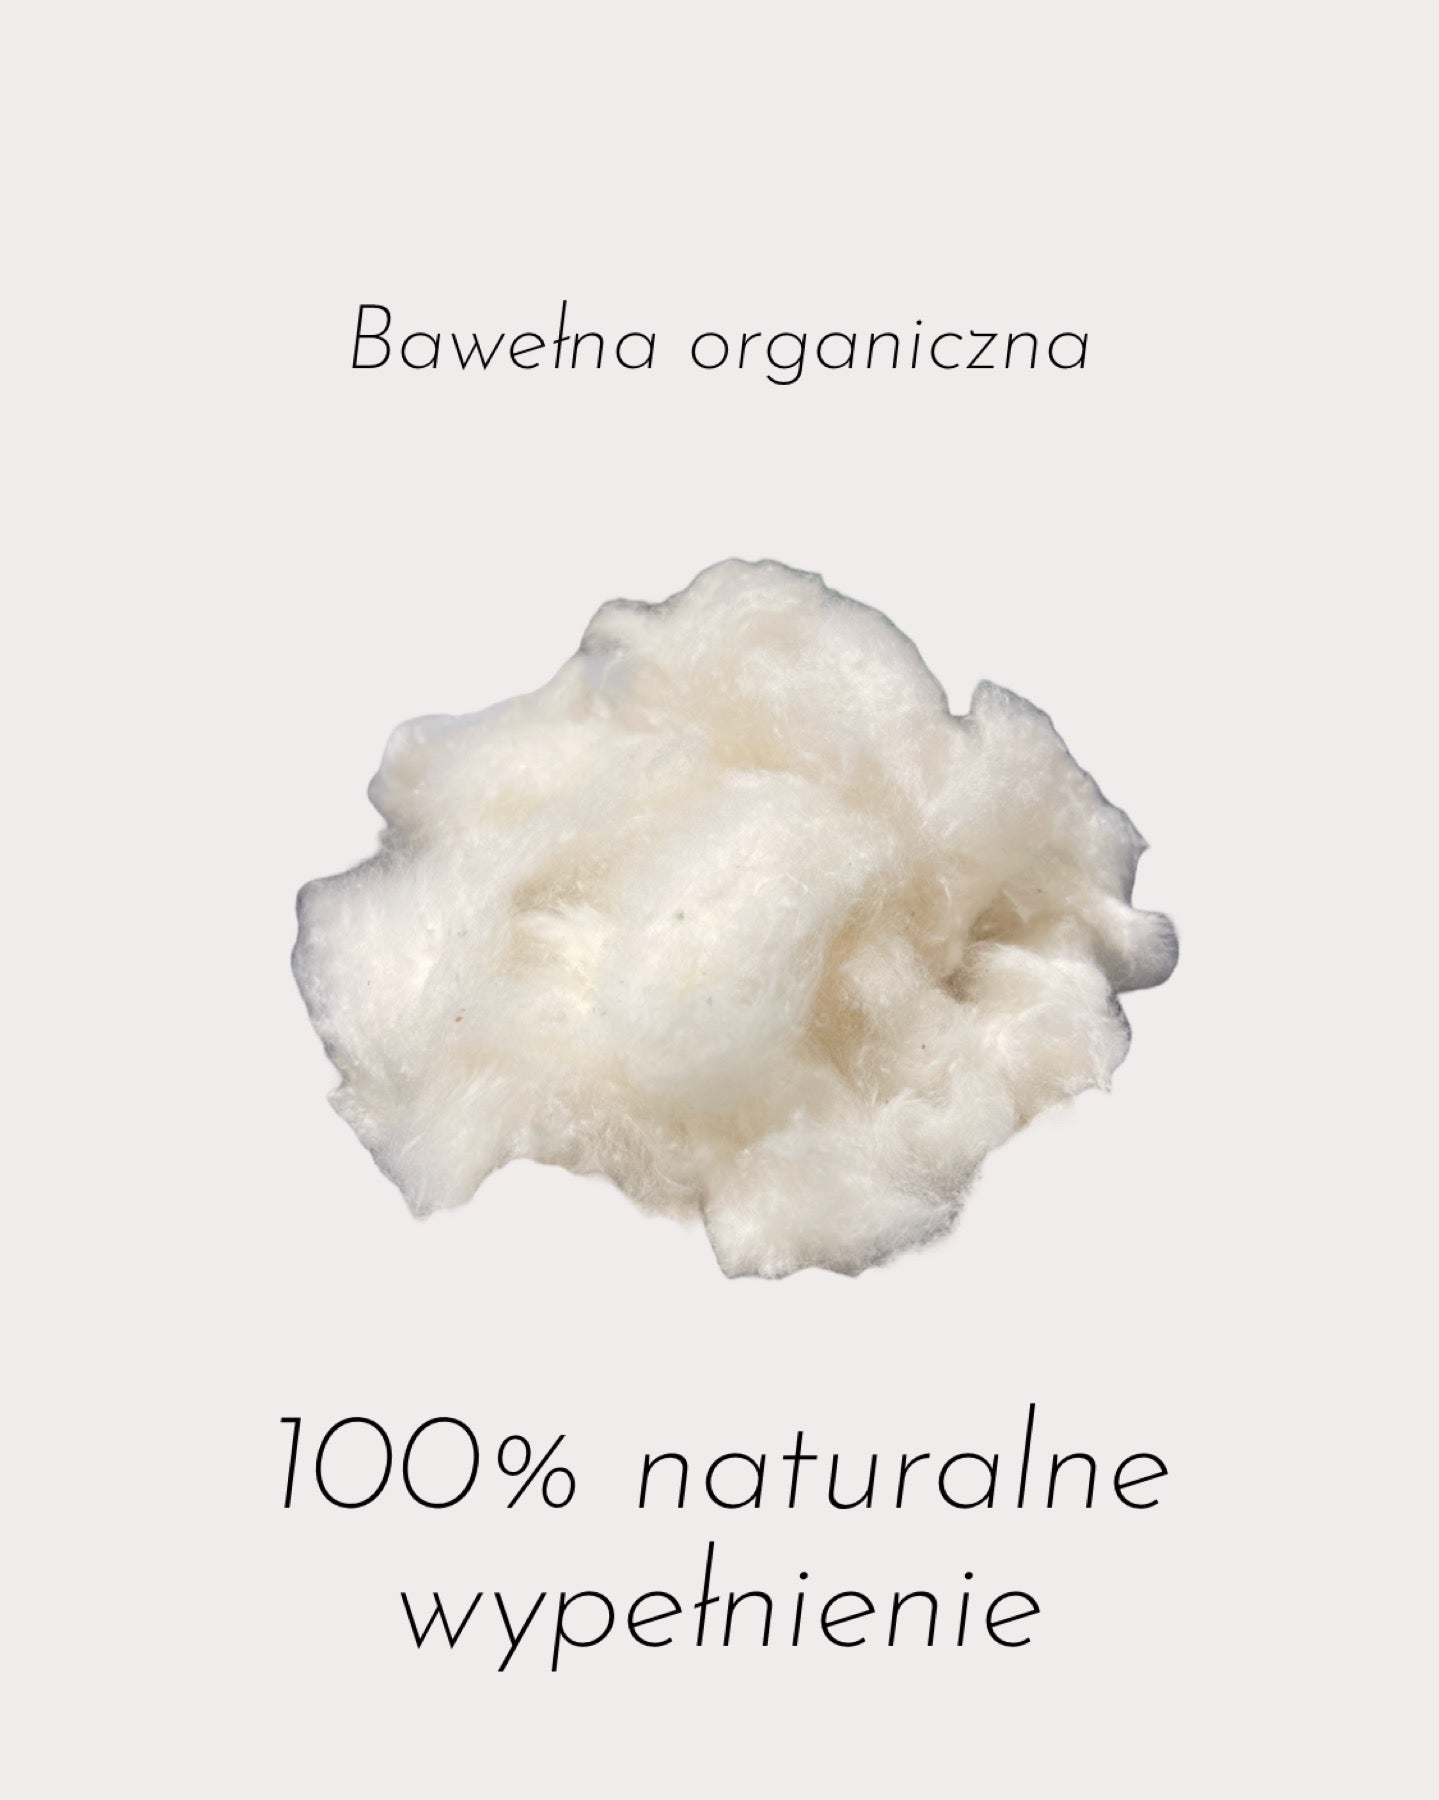 Bawełna organiczna do wypełnień. Organic Cotton. Owata bawełniana.